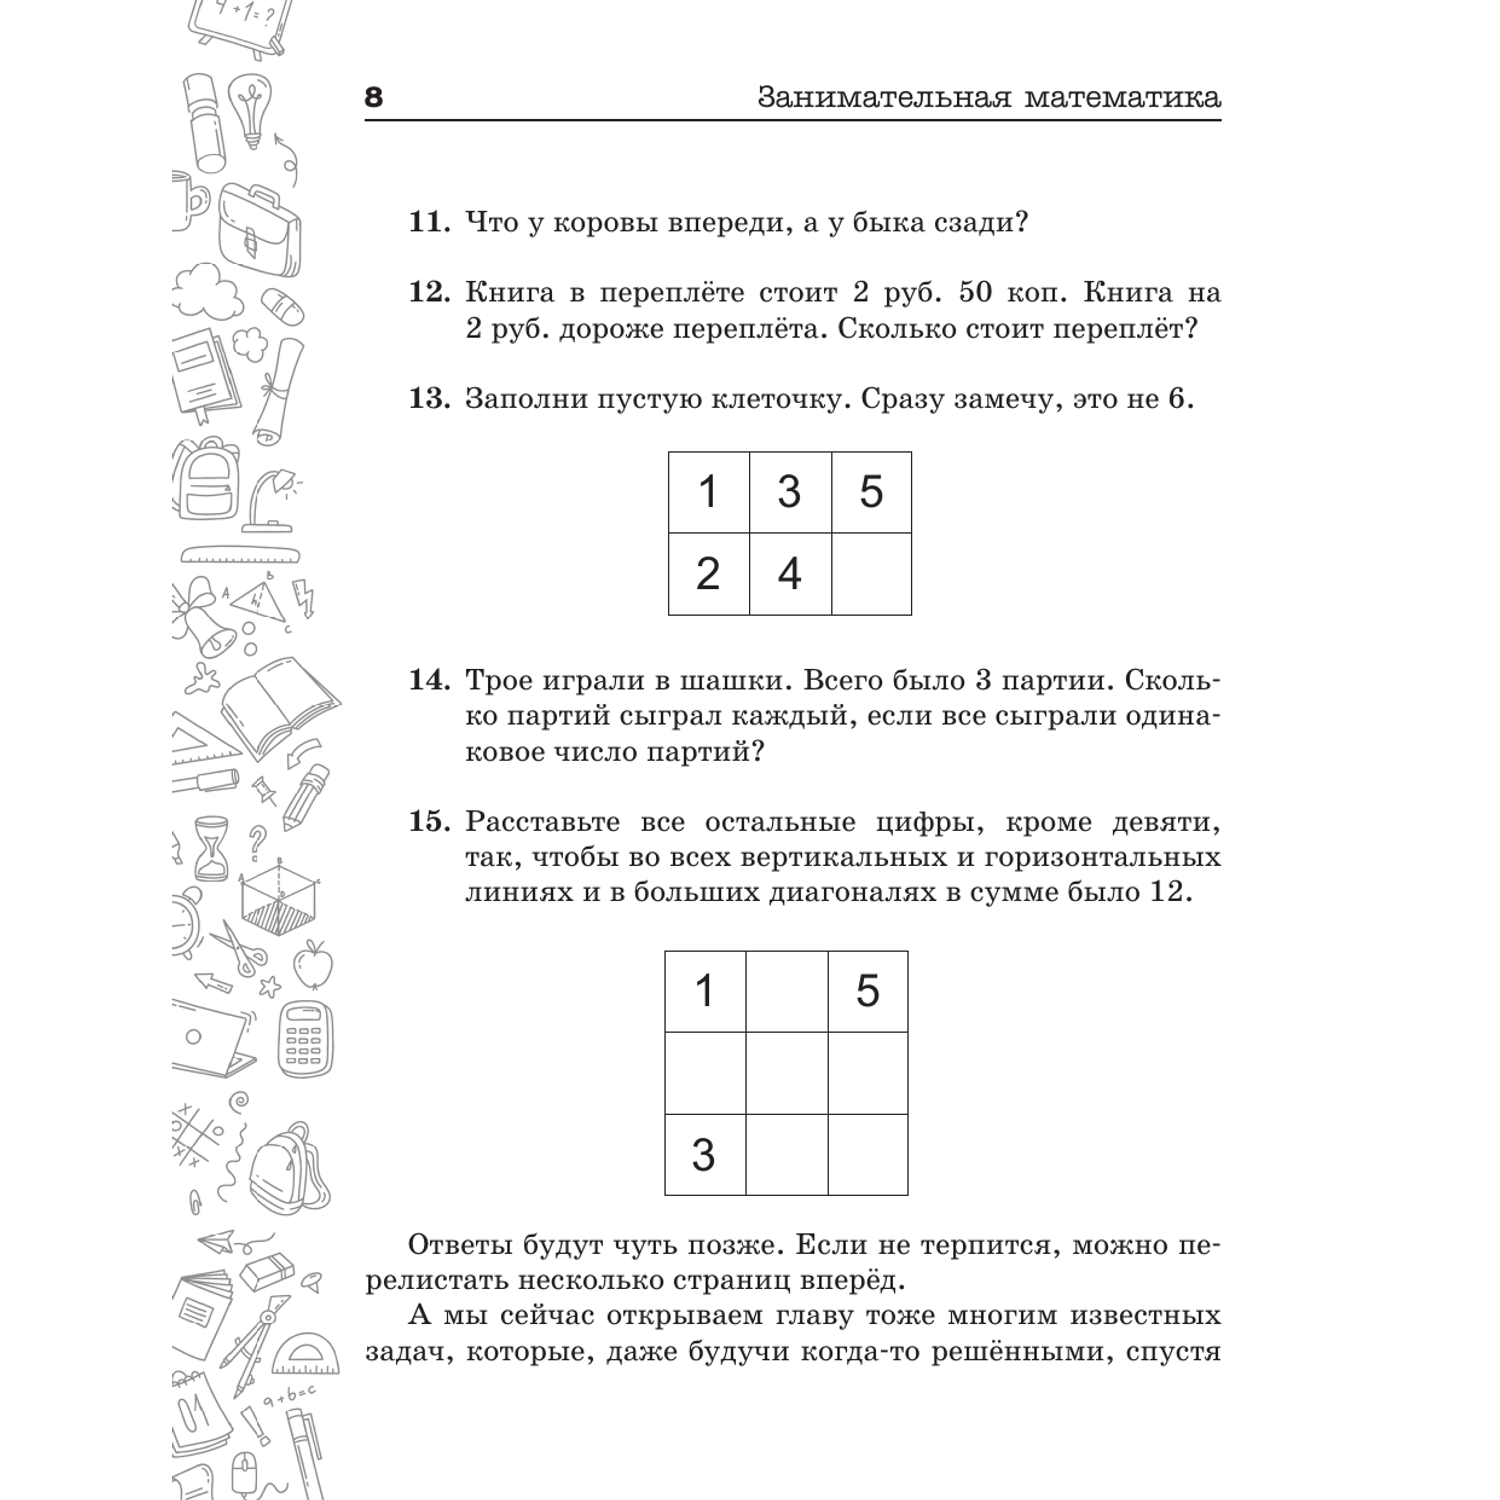 Книги АСТ Занимательная математика для детей и взрослых - фото 10